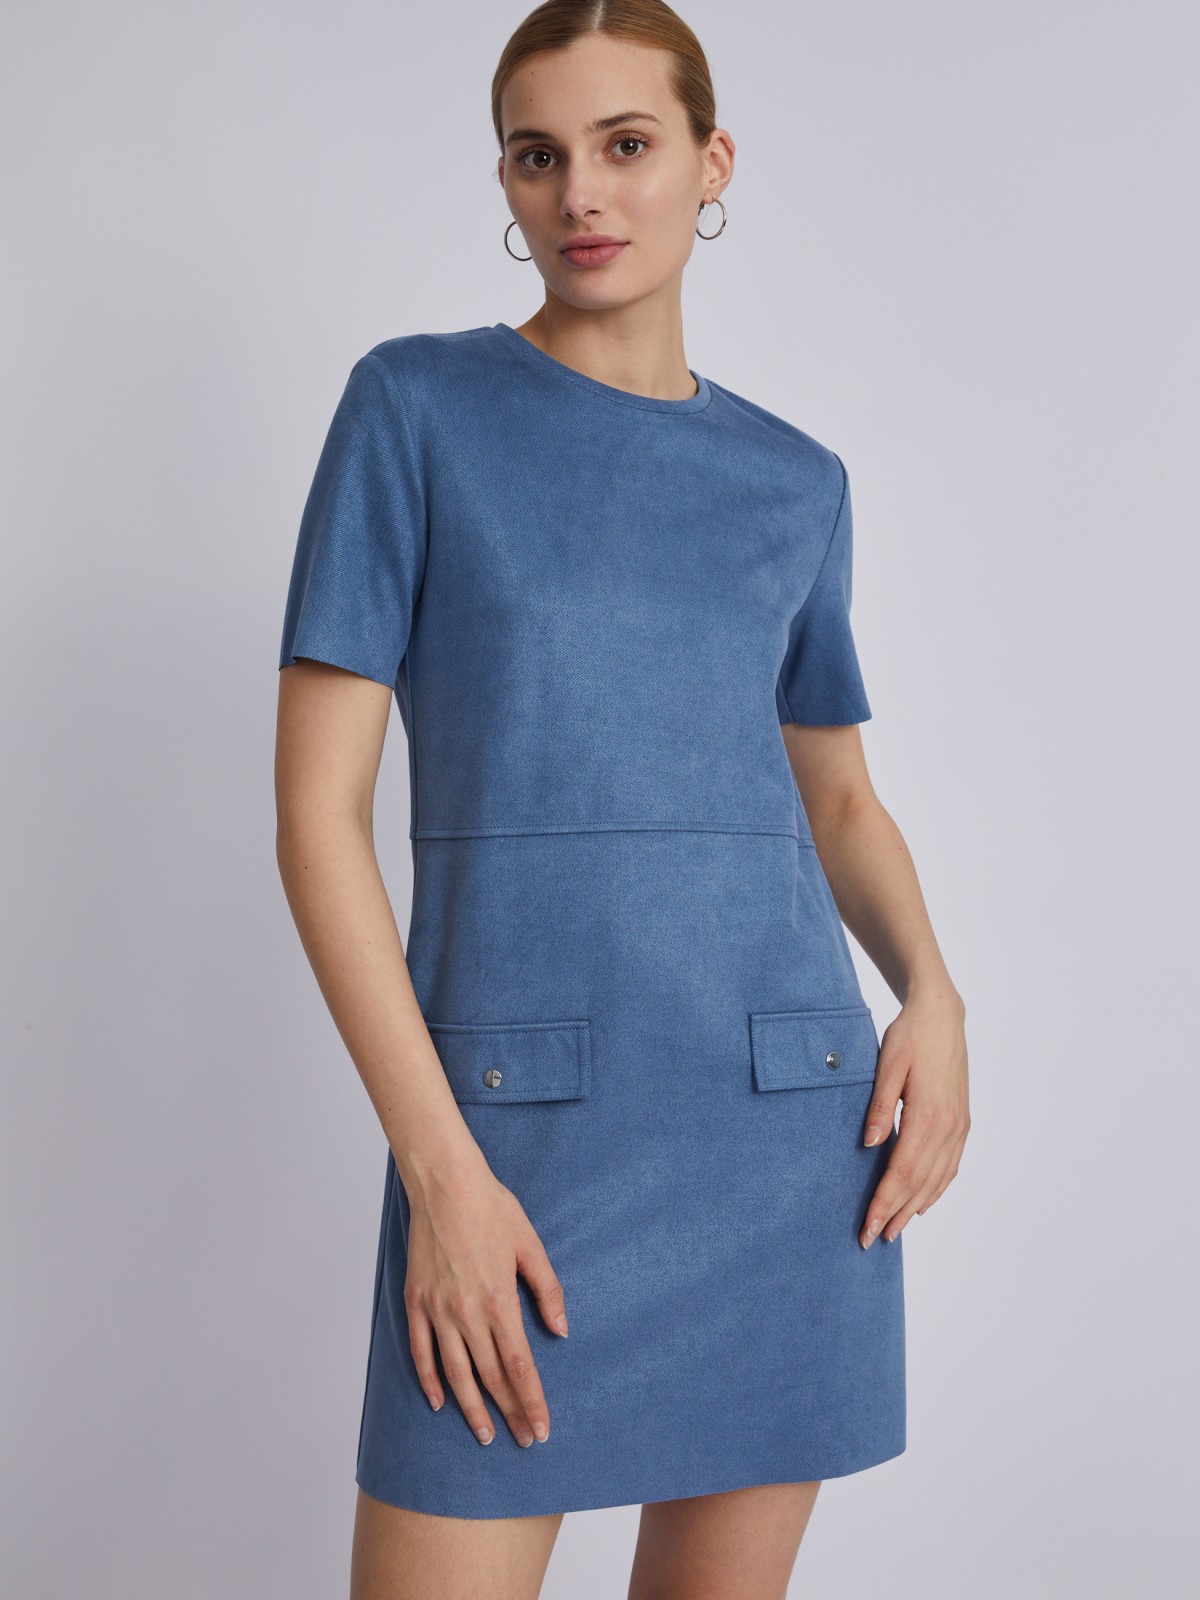 Платье кроеное zolla 023328139033, цвет голубой, размер S